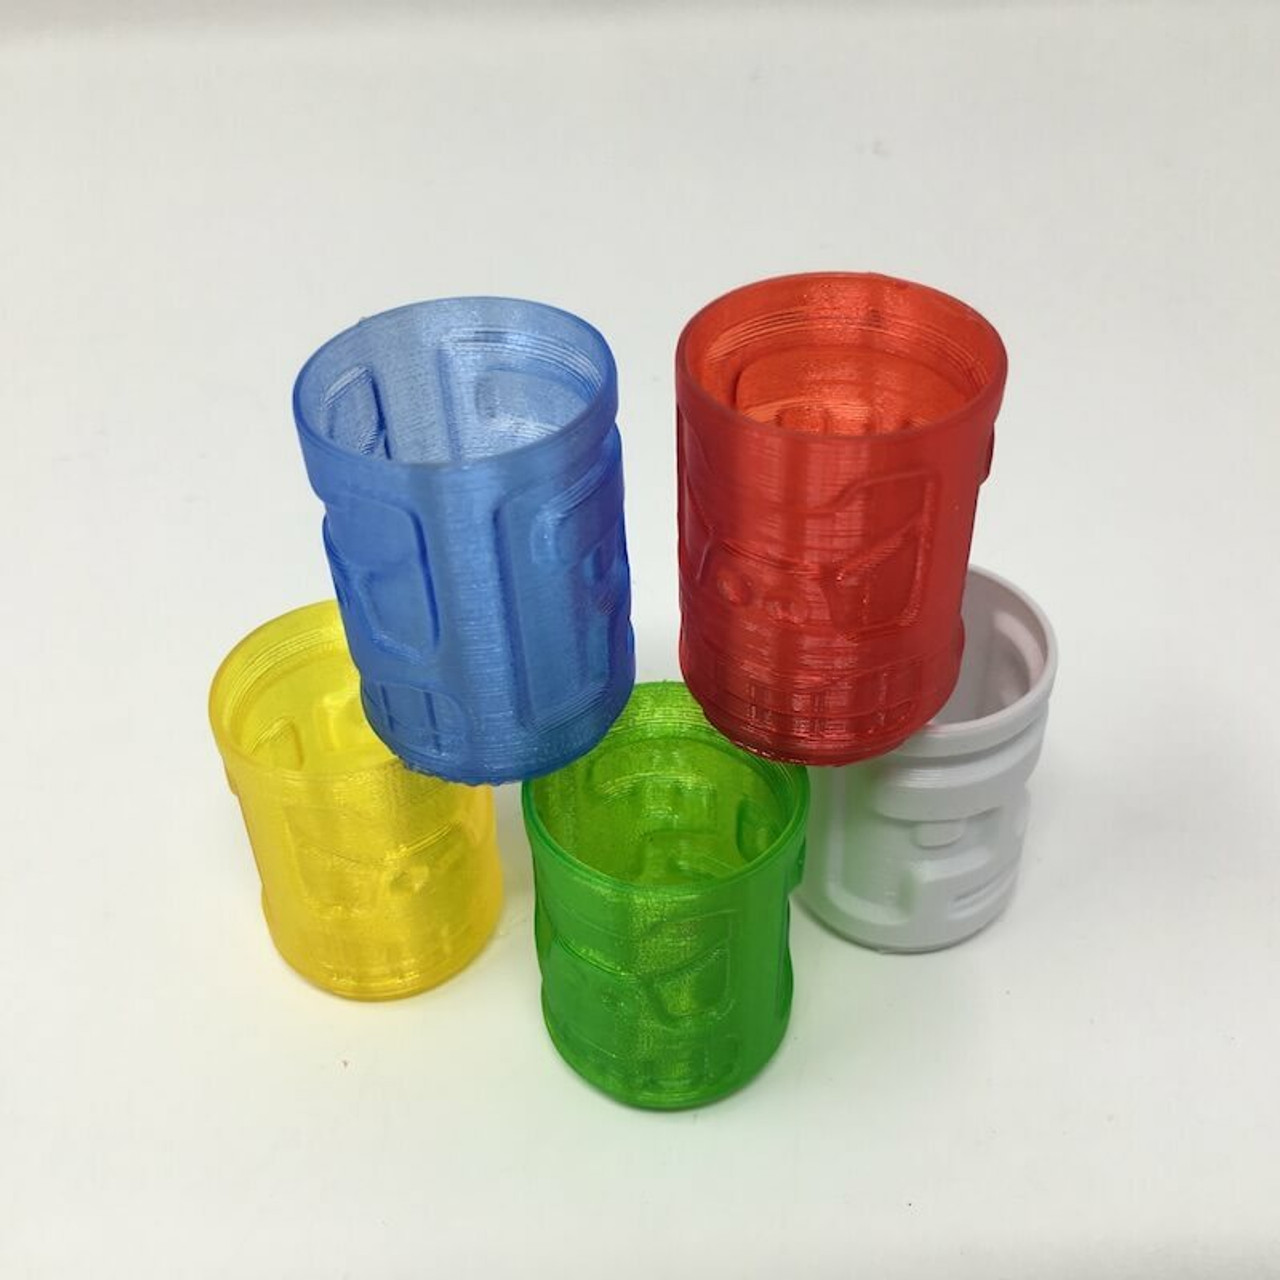 PETG HDGlass - 750g blanc opaque Filaments pour imprimantes 3D